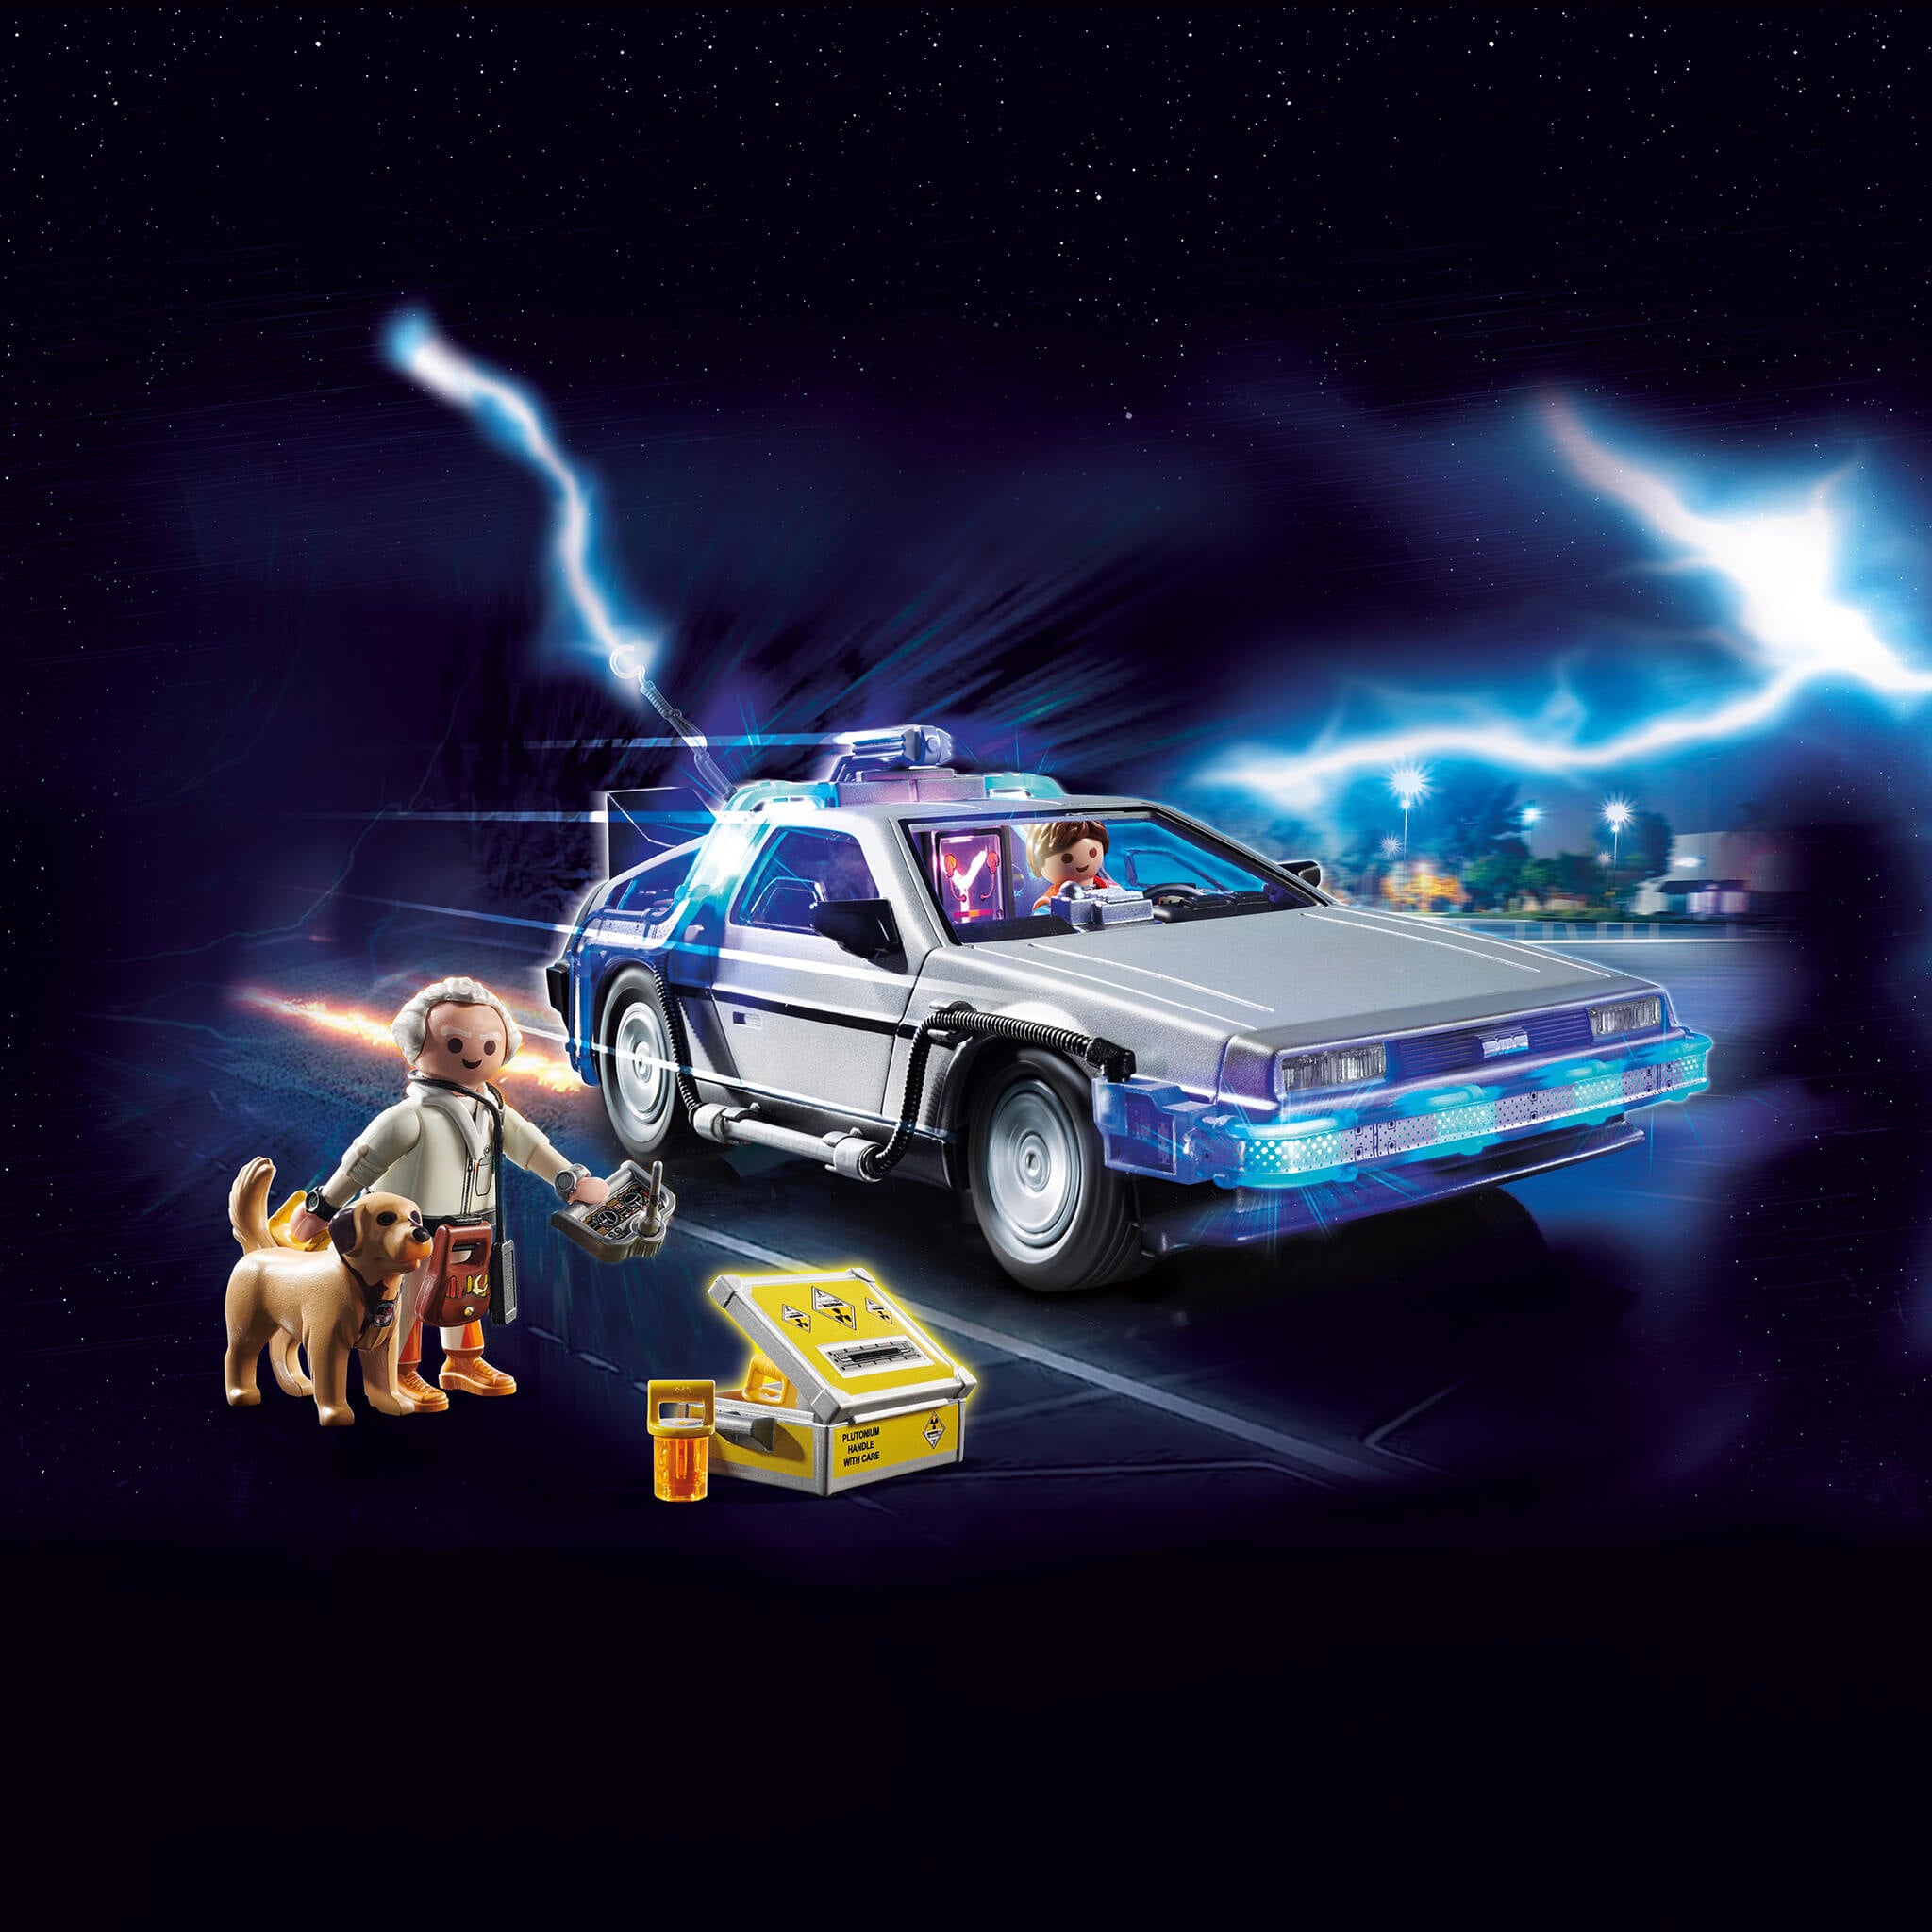 Playmobil - Back to the Future - DeLorean